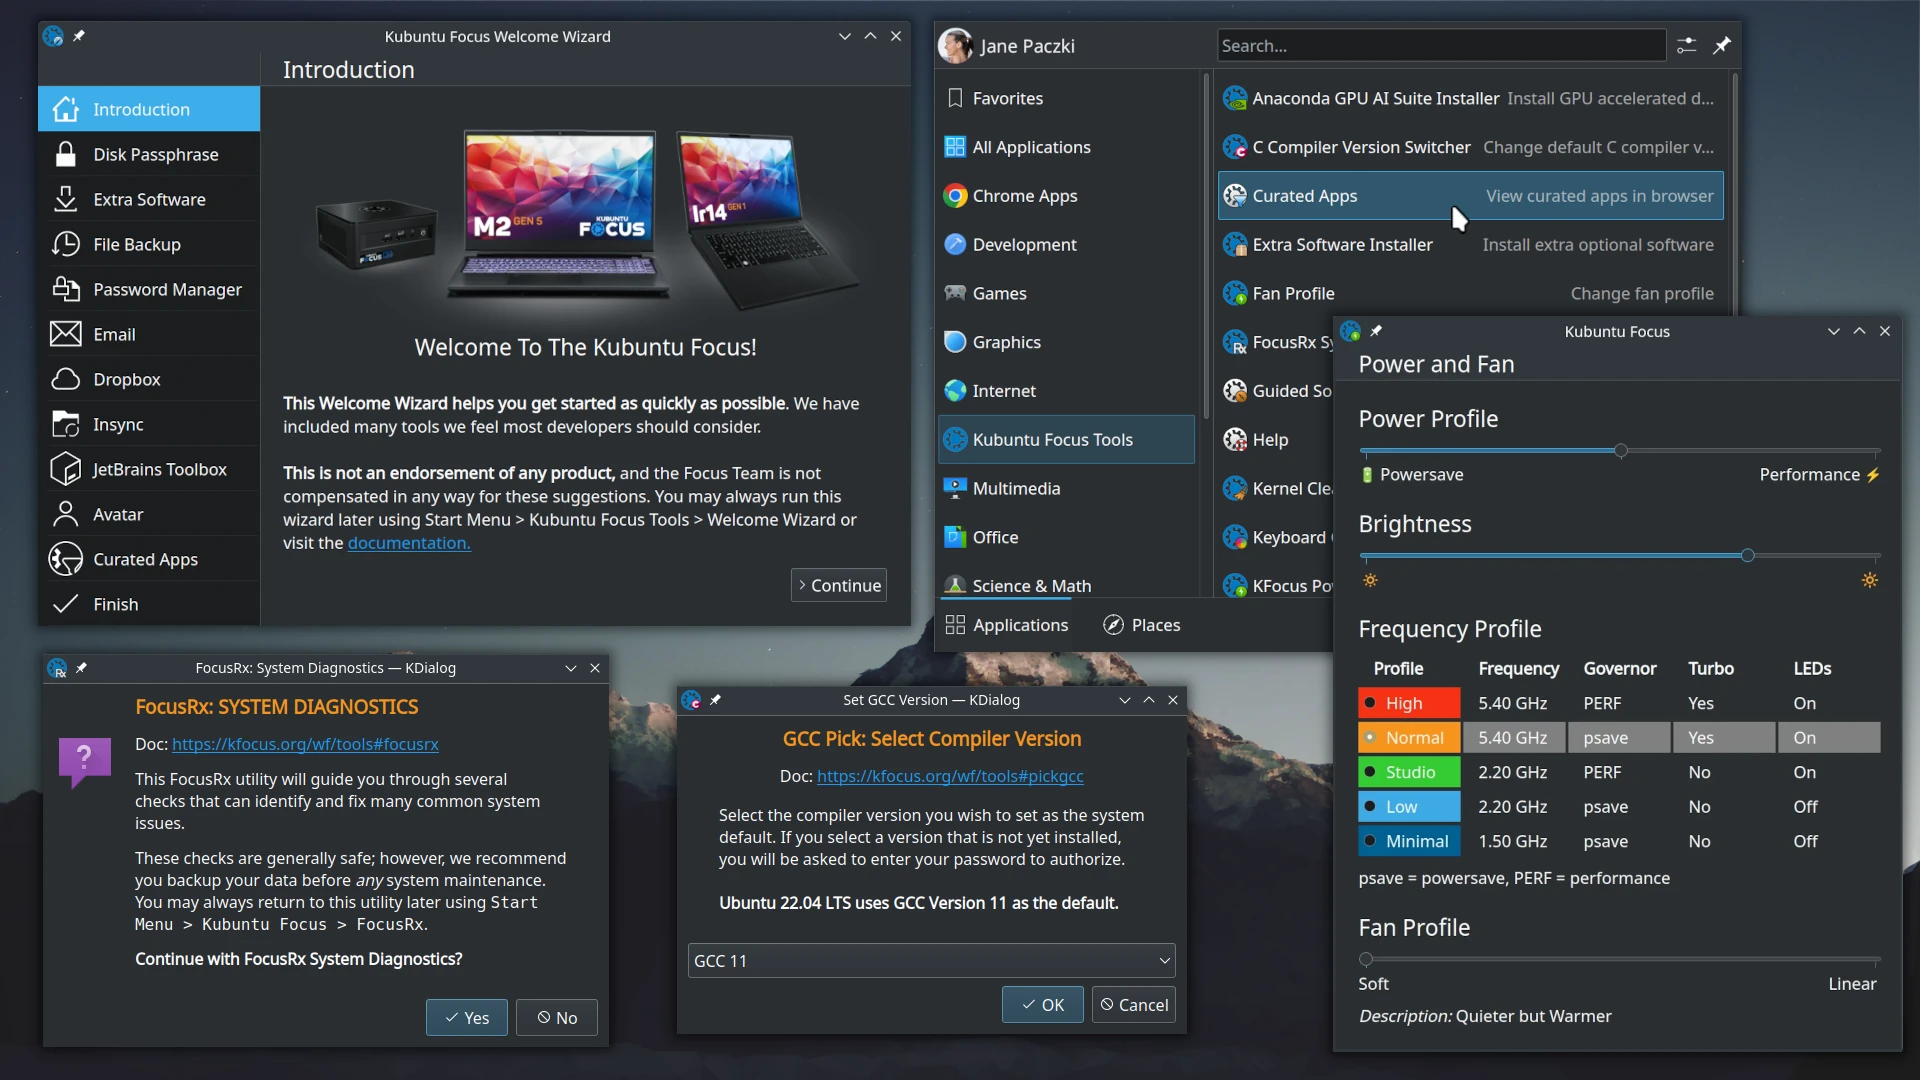 Kubuntu Focus Guided Solution: Gaming